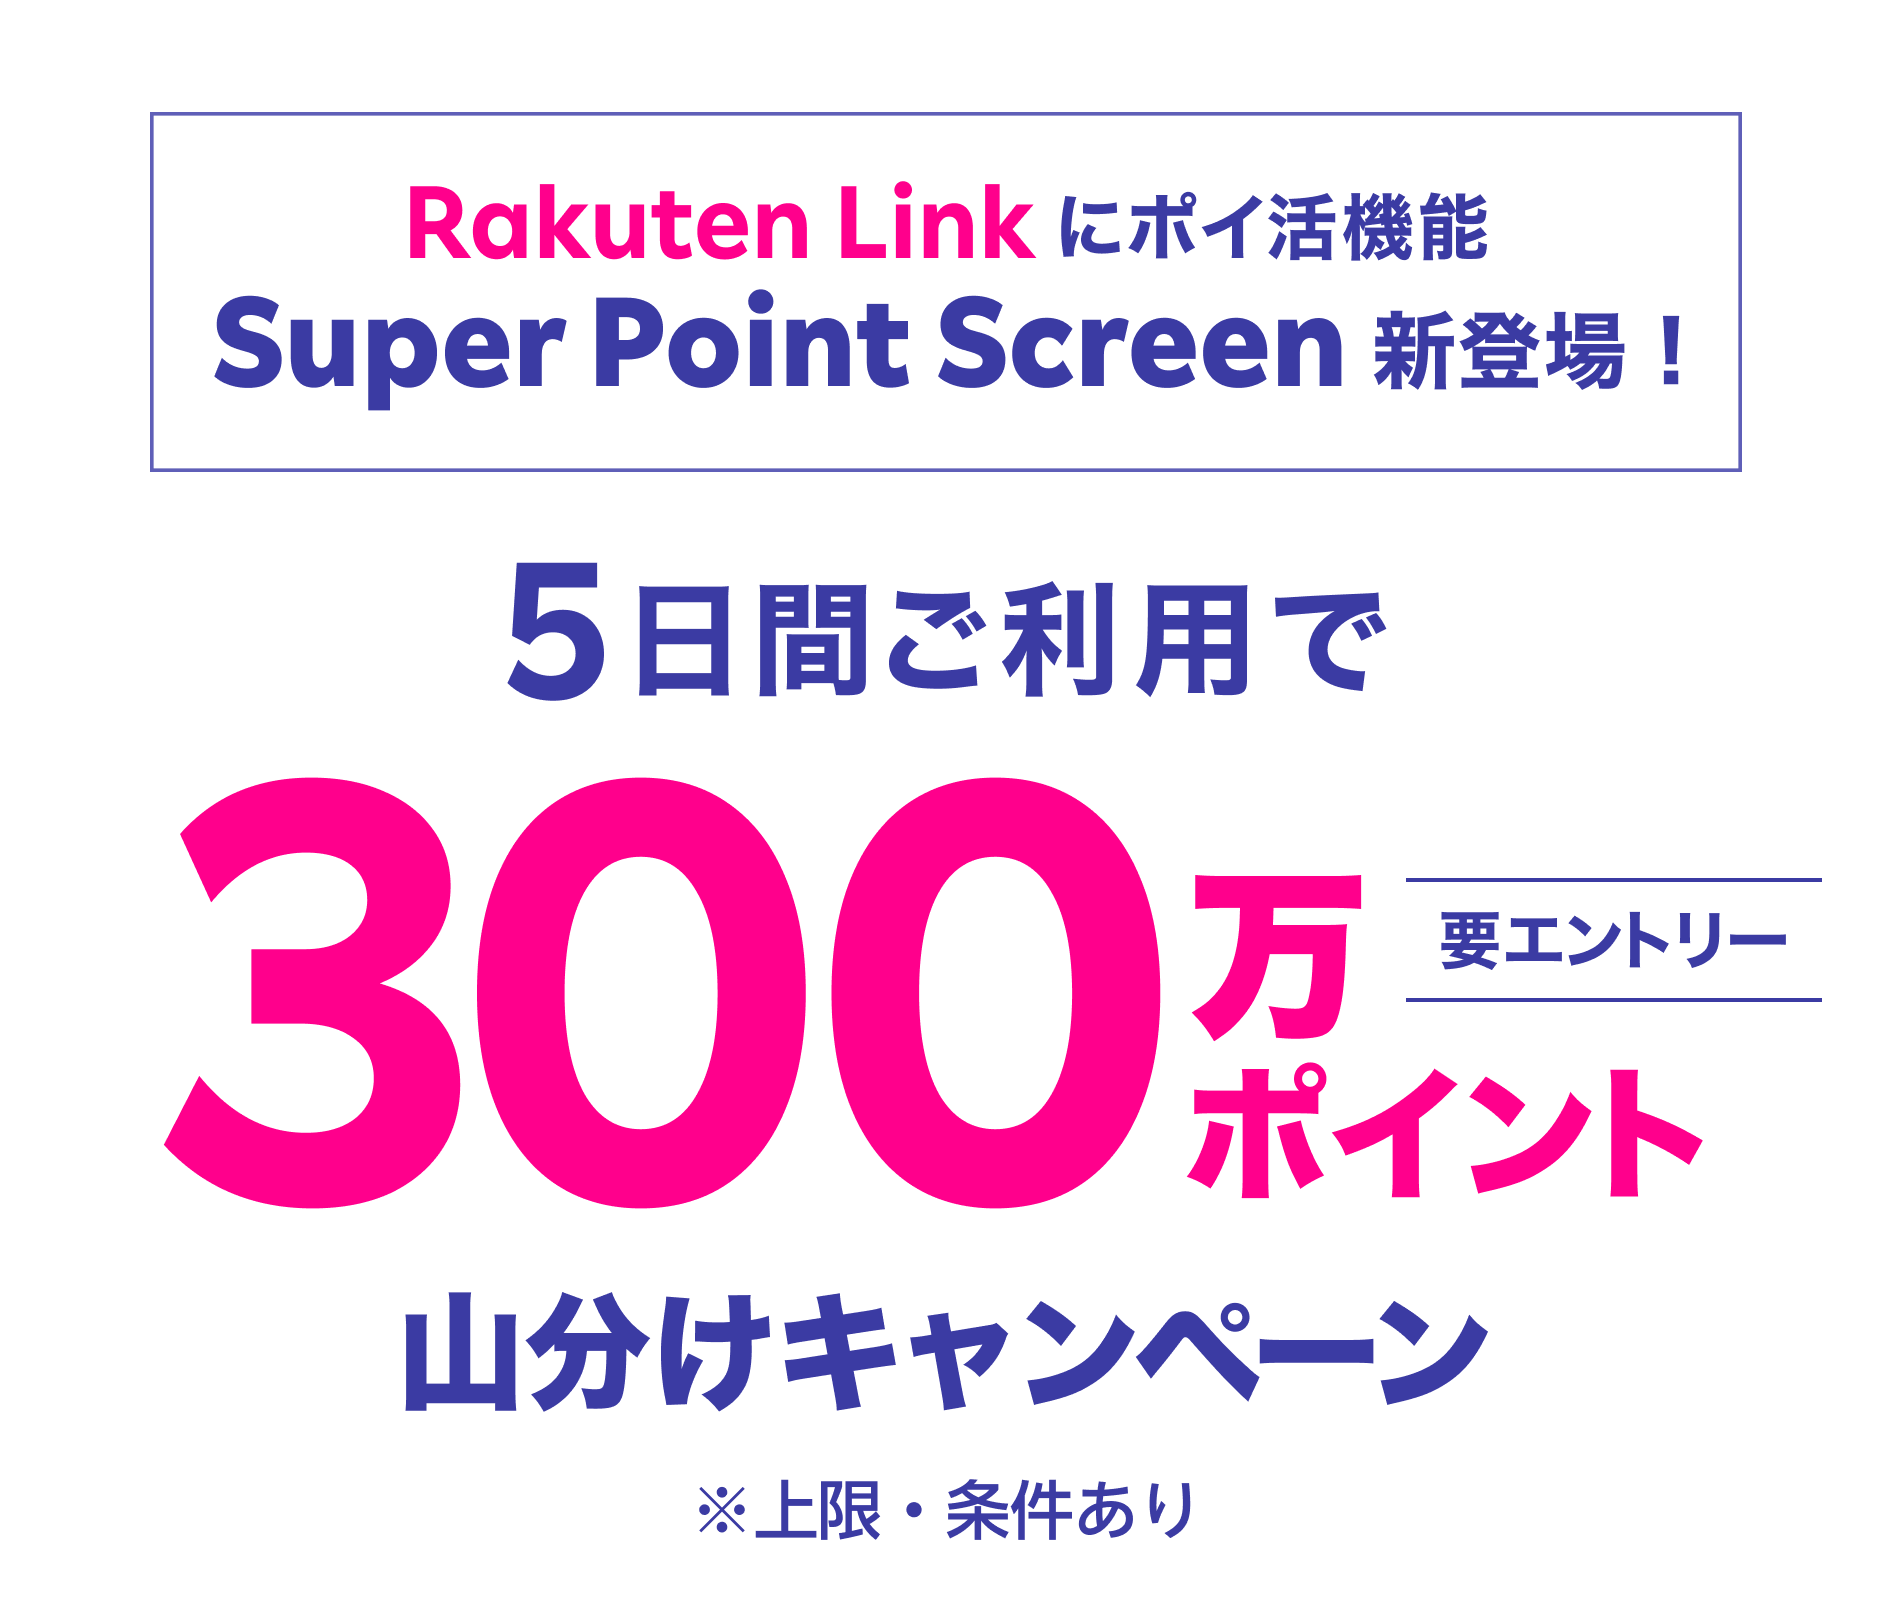 Rakuten Linkにポイ活機能 Super Point Screen新登場！5日間ご利用で300万ポイント山分けキャンペーン 要エントリー ※上限・条件あり